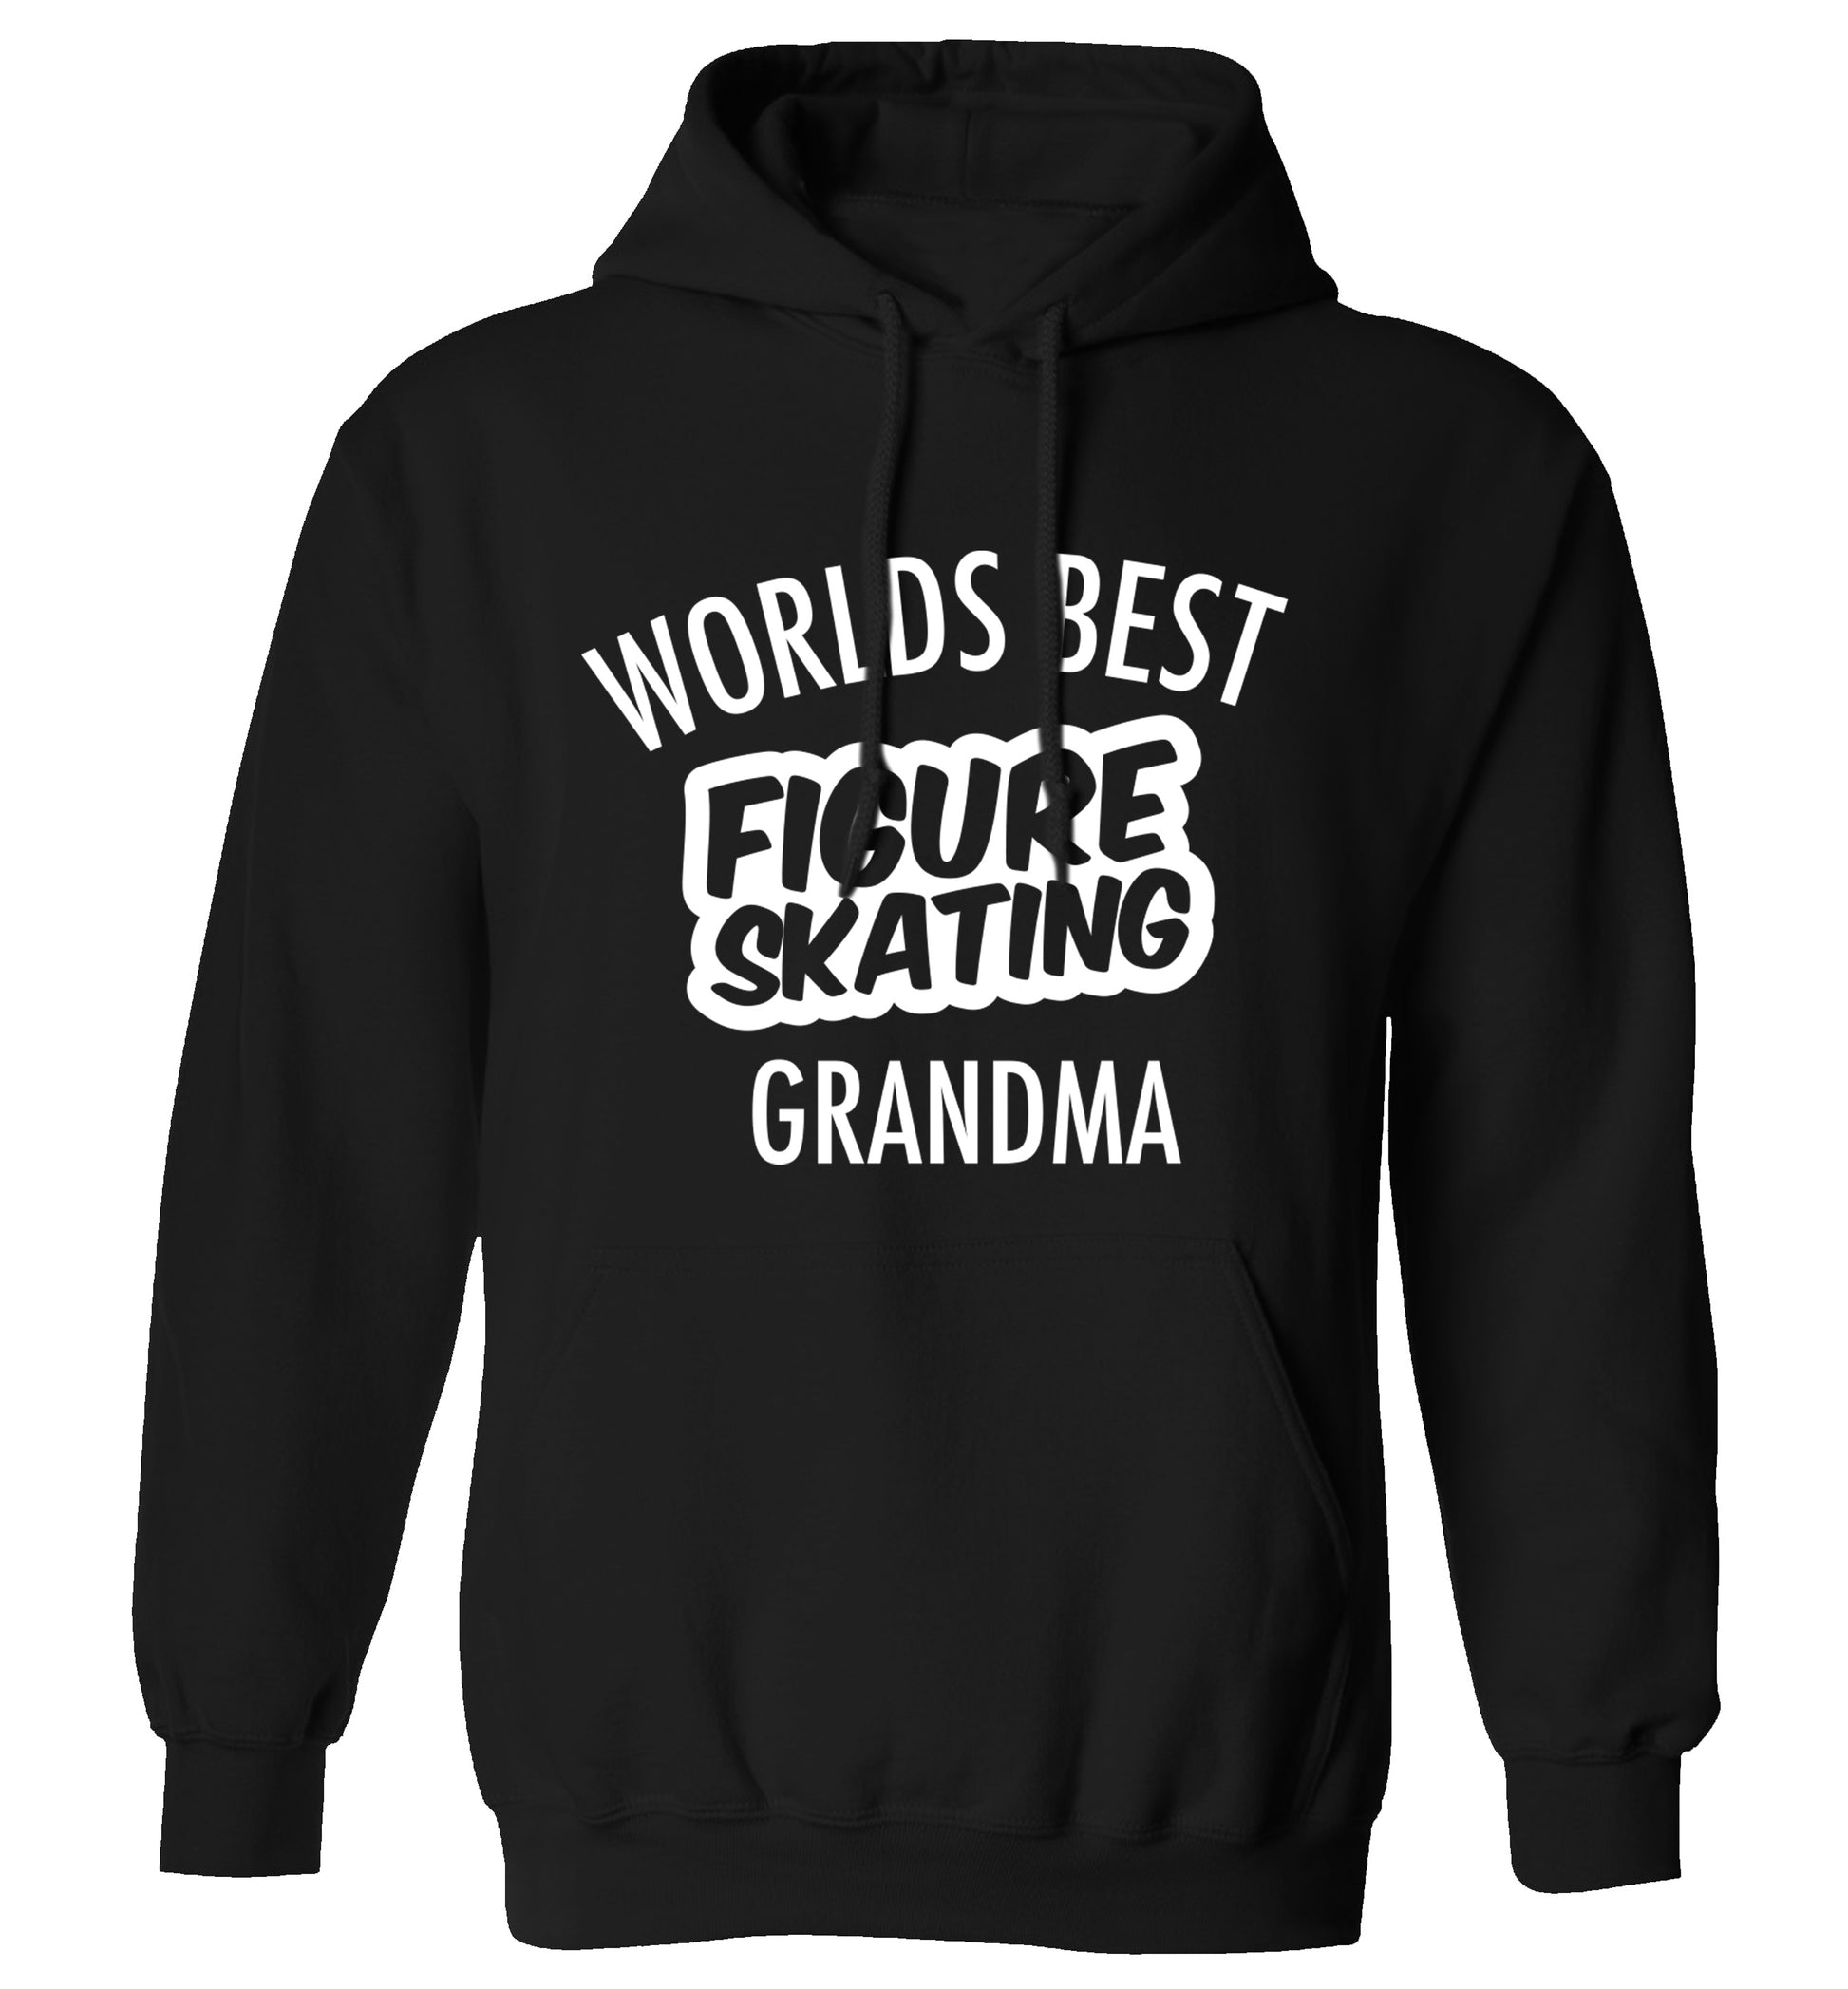 Worlds best figure skating grandma adults unisexblack hoodie 2XL